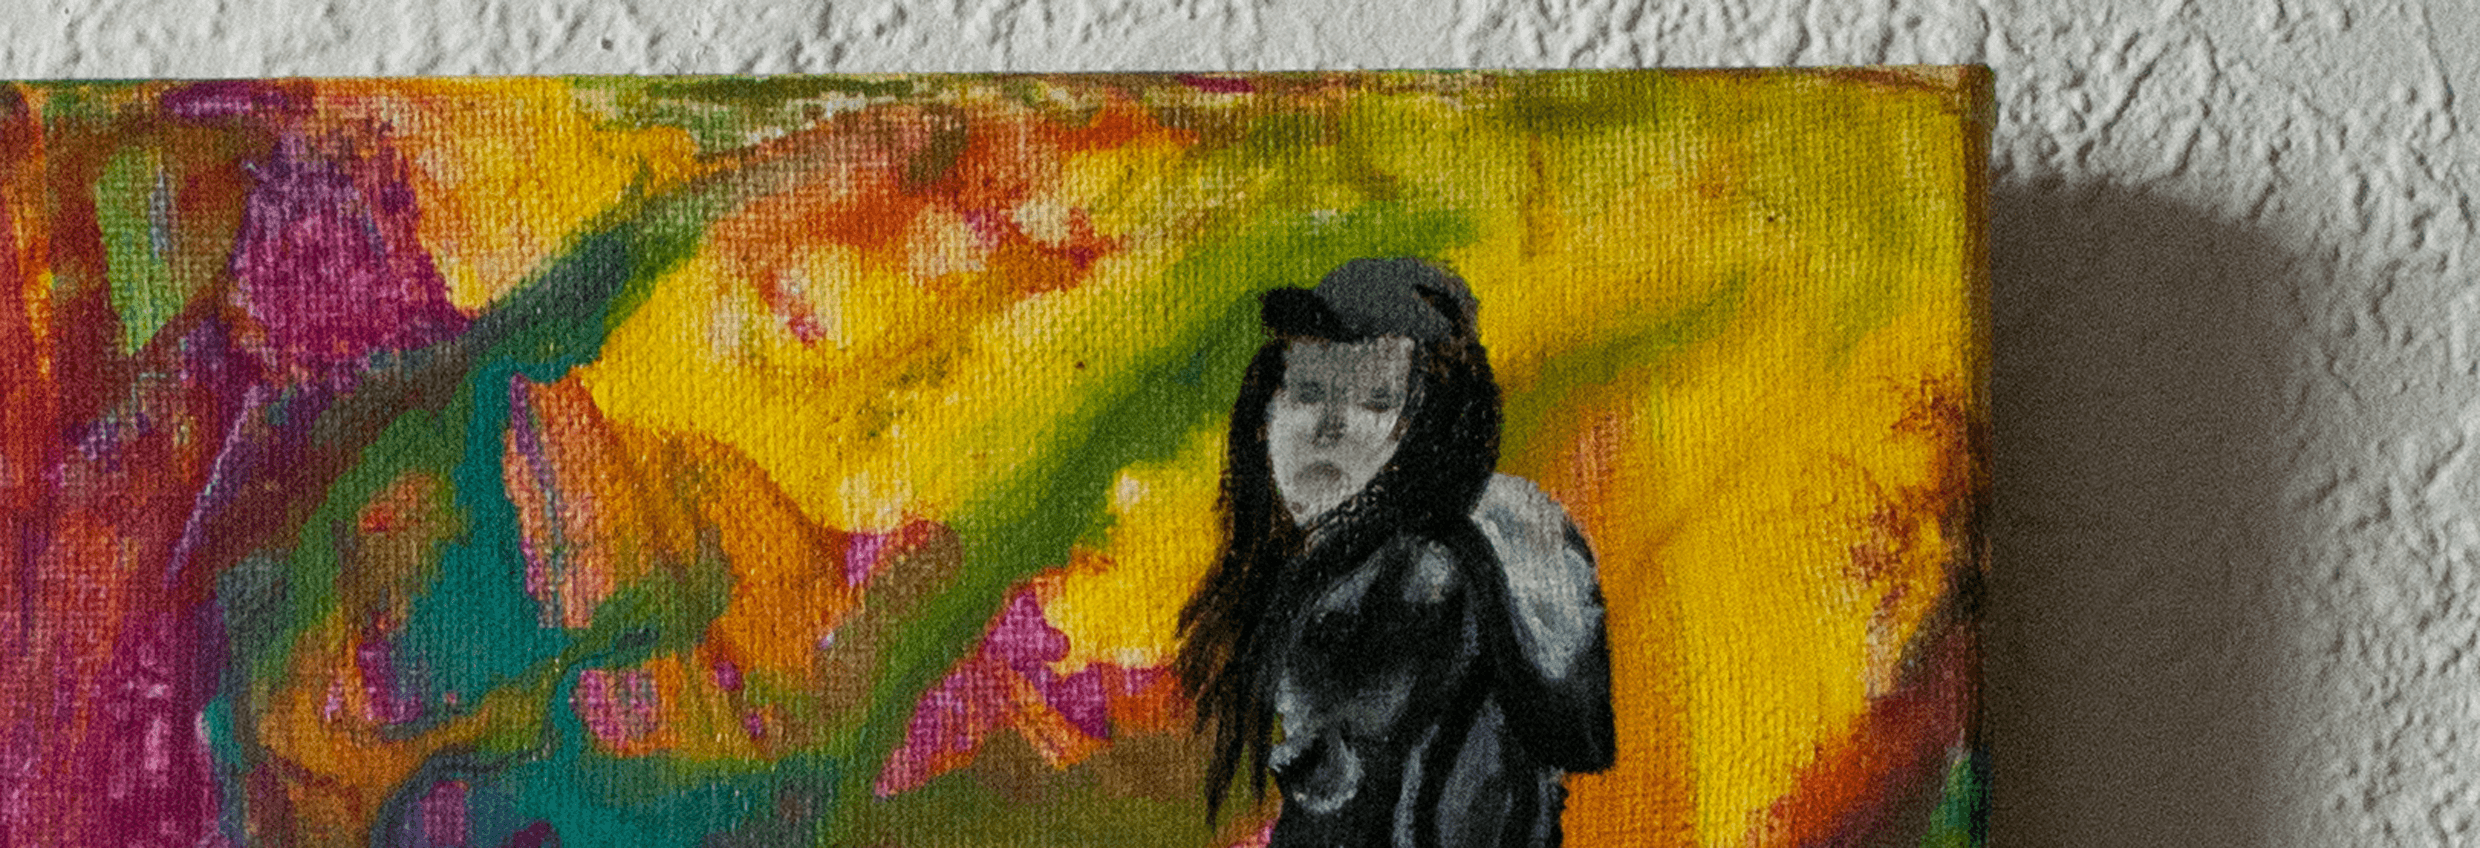 Acryl Malerei Serie CMYK 22 Bild Name Fixie Women gemalt von ViPa Art